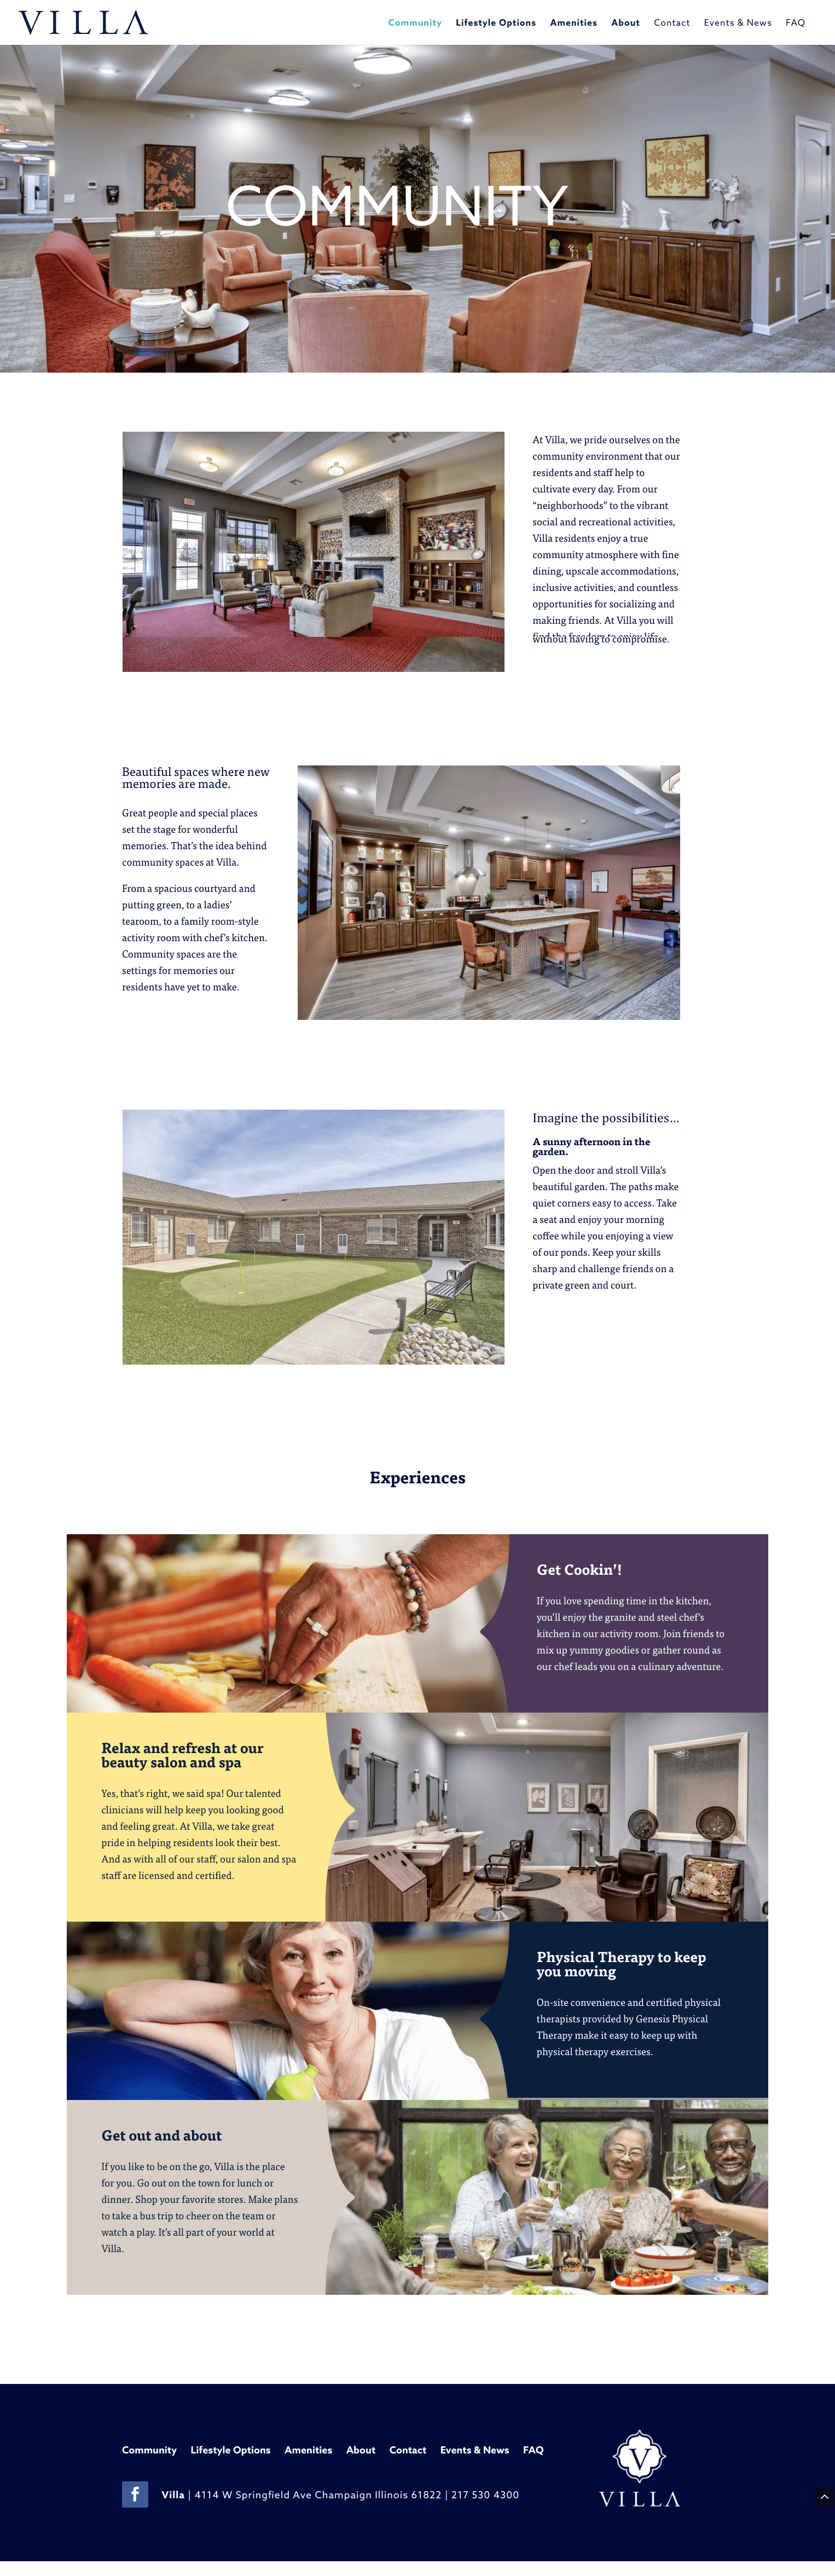 Villa - Website